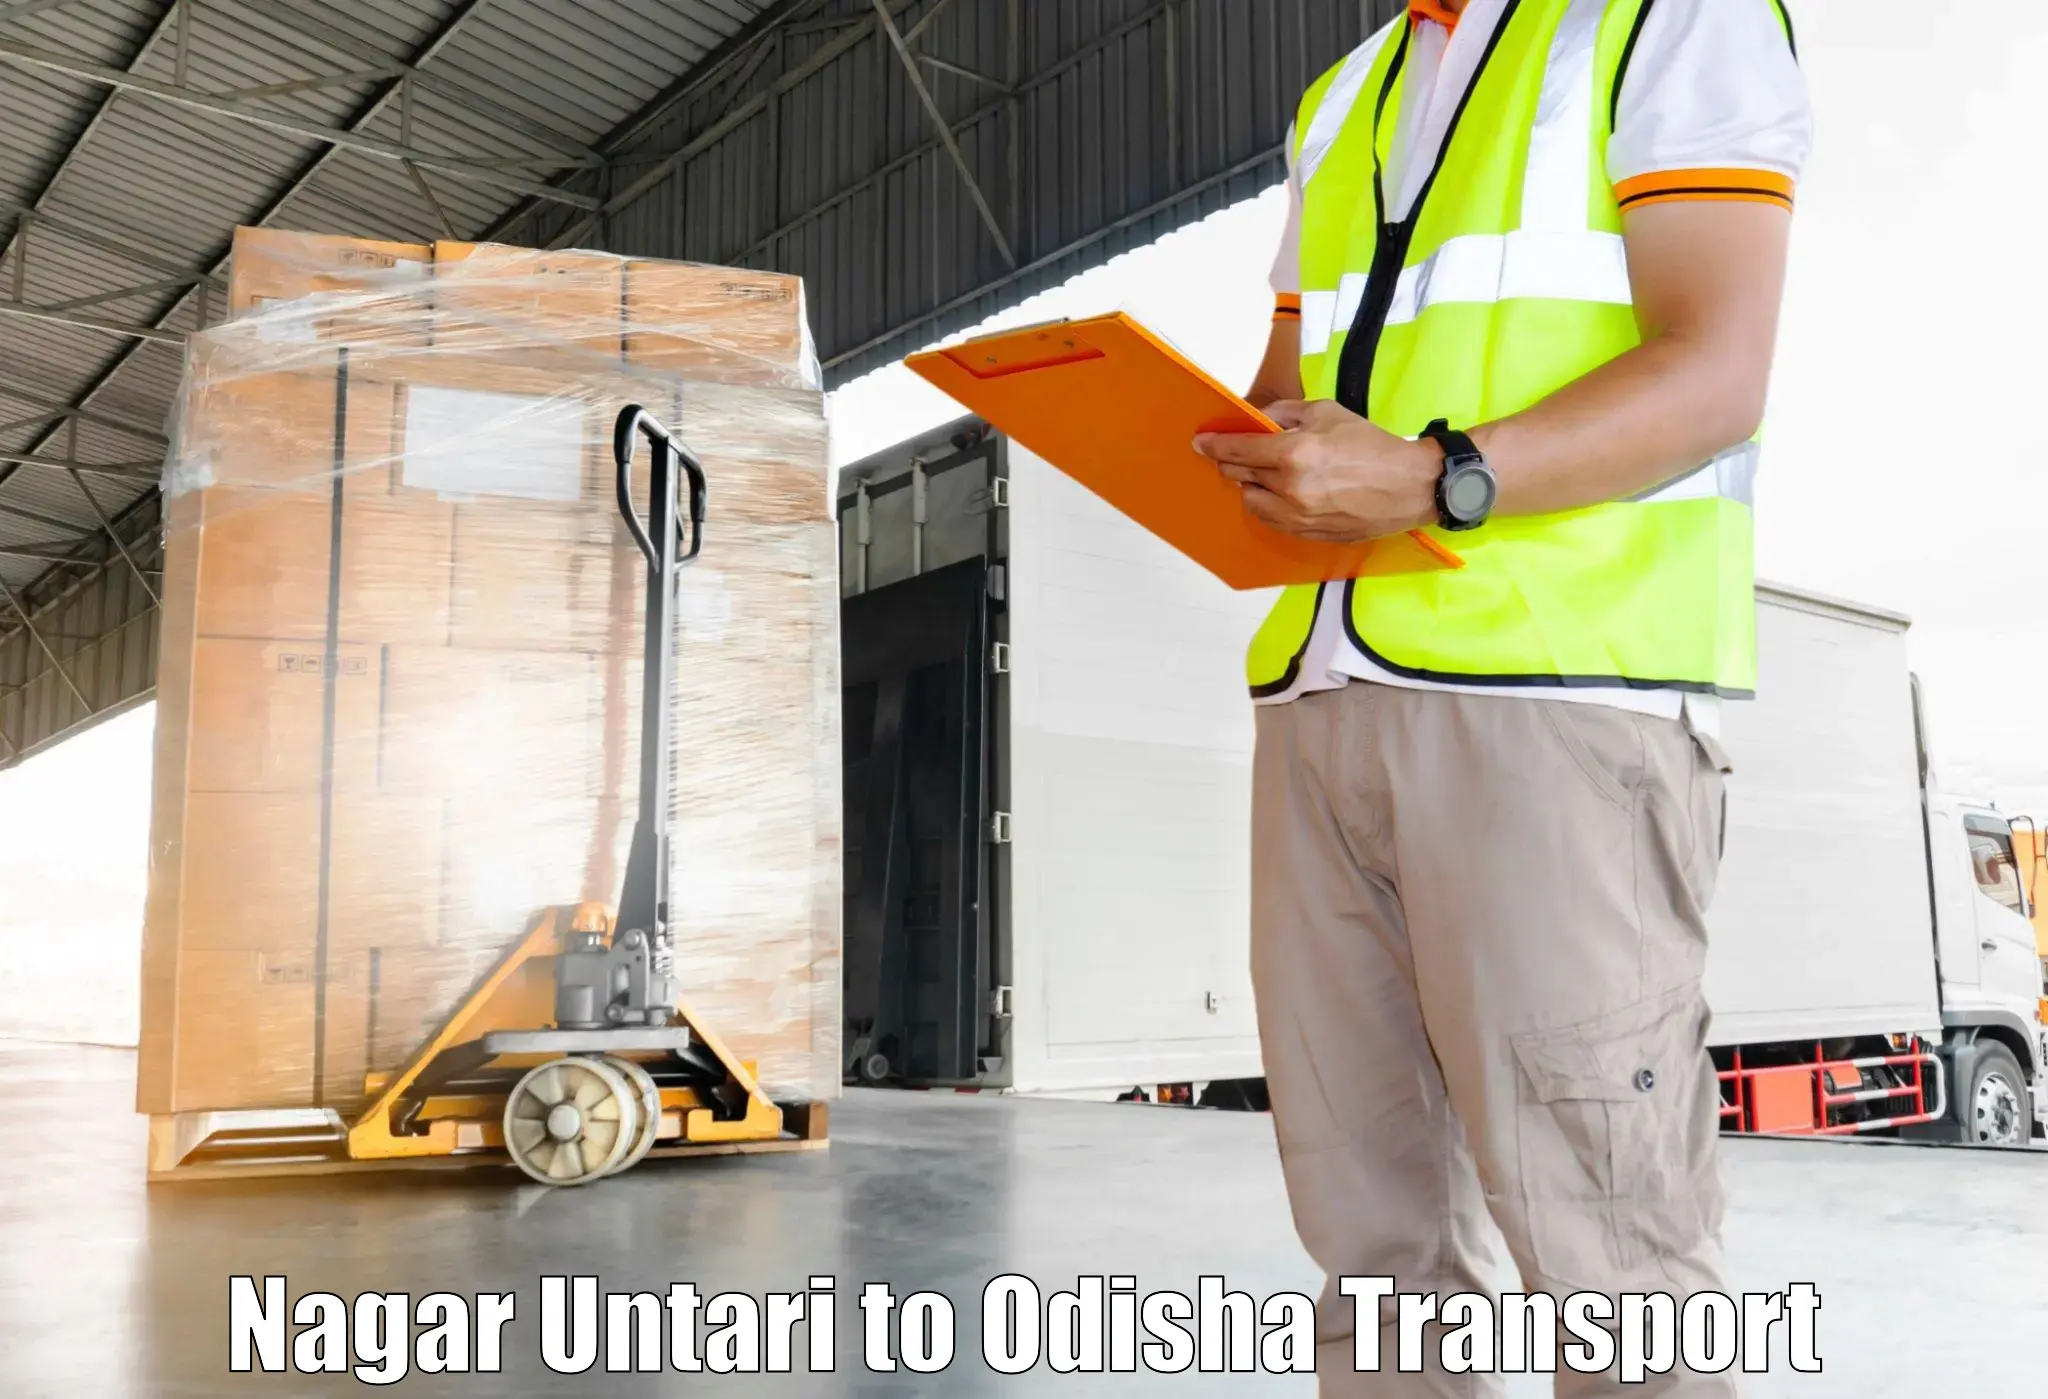 Online transport Nagar Untari to Dandisahi